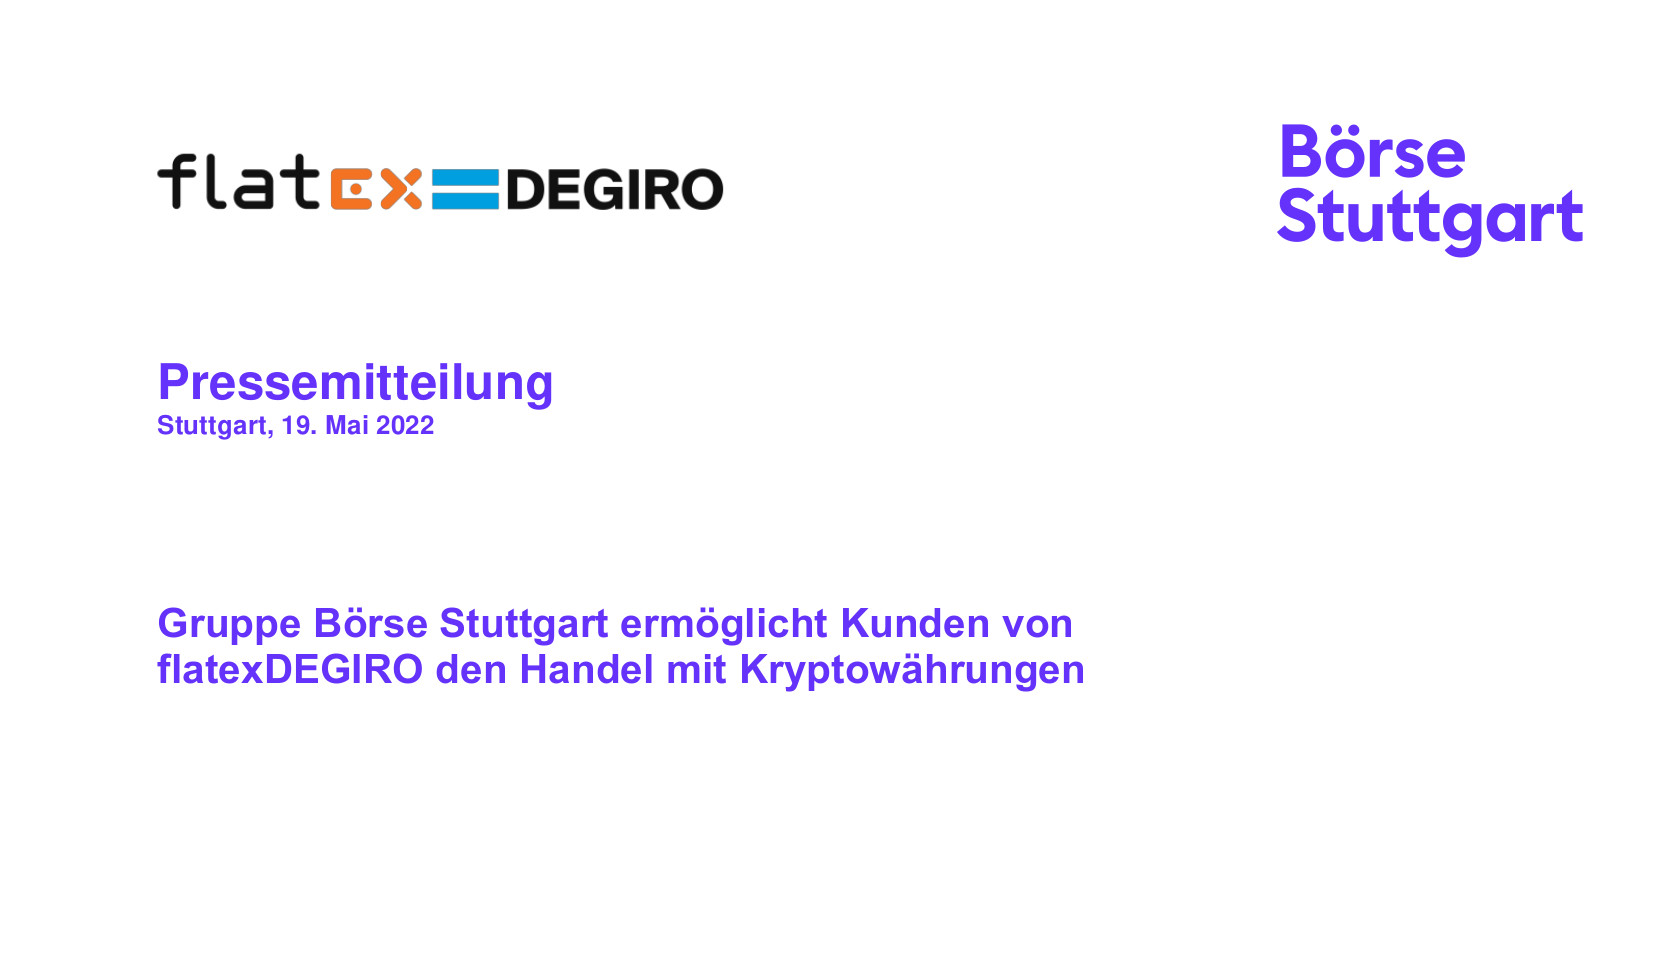 Gruppe Börse Stuttgart ermöglicht Kunden von flatexDEGIRO den Handel mit Kryptowährungen